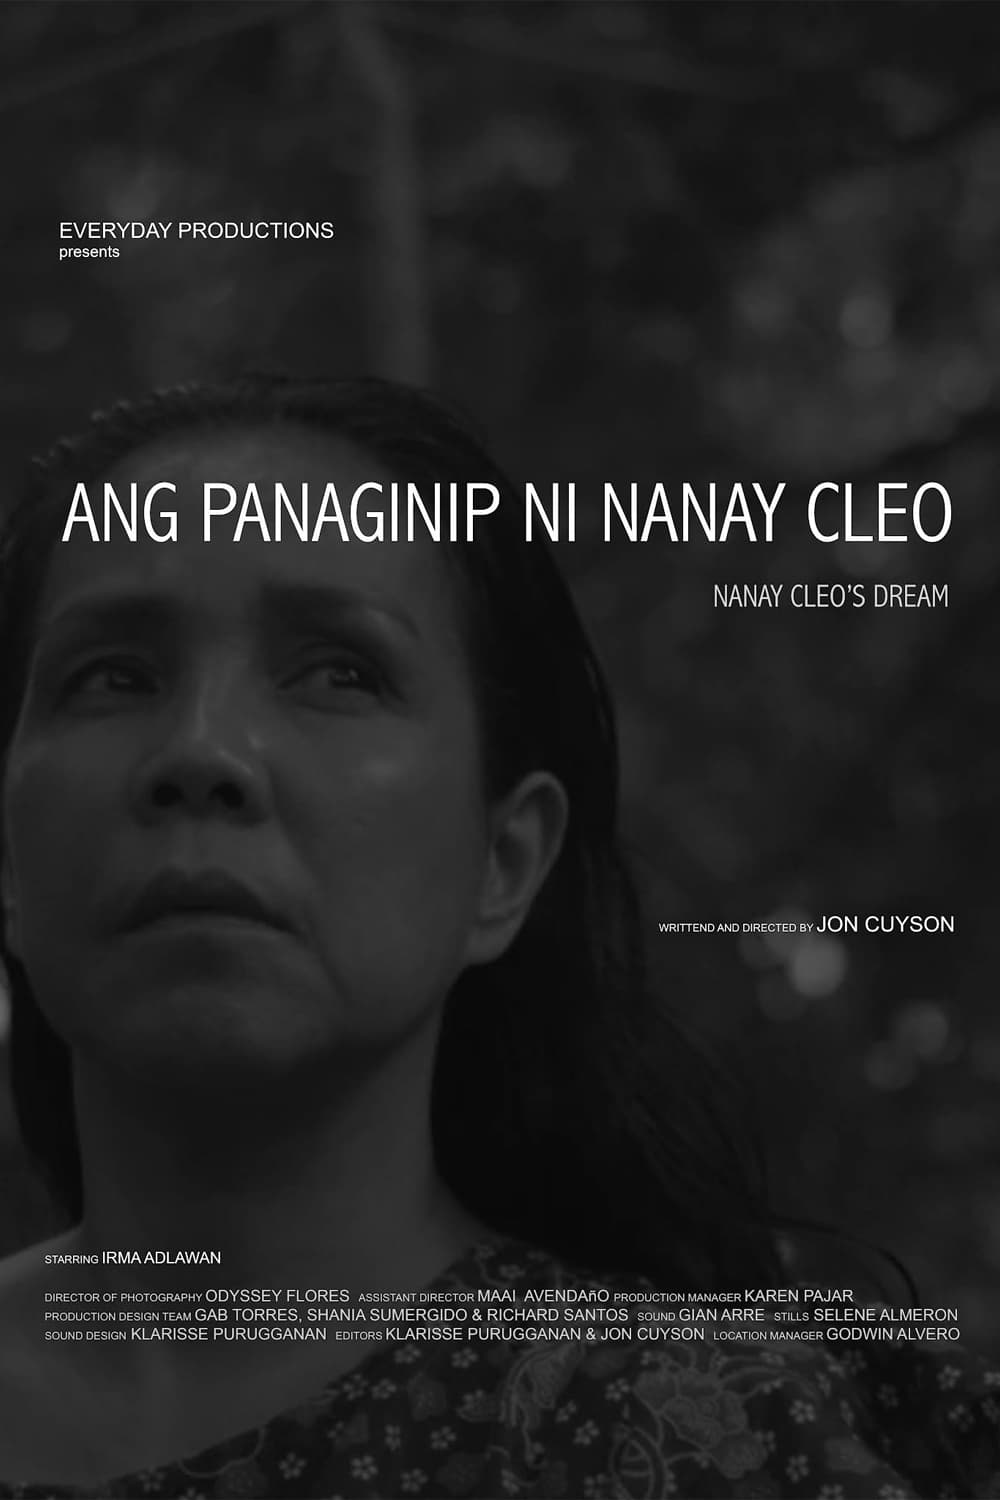 Nanay Cleo's Dream